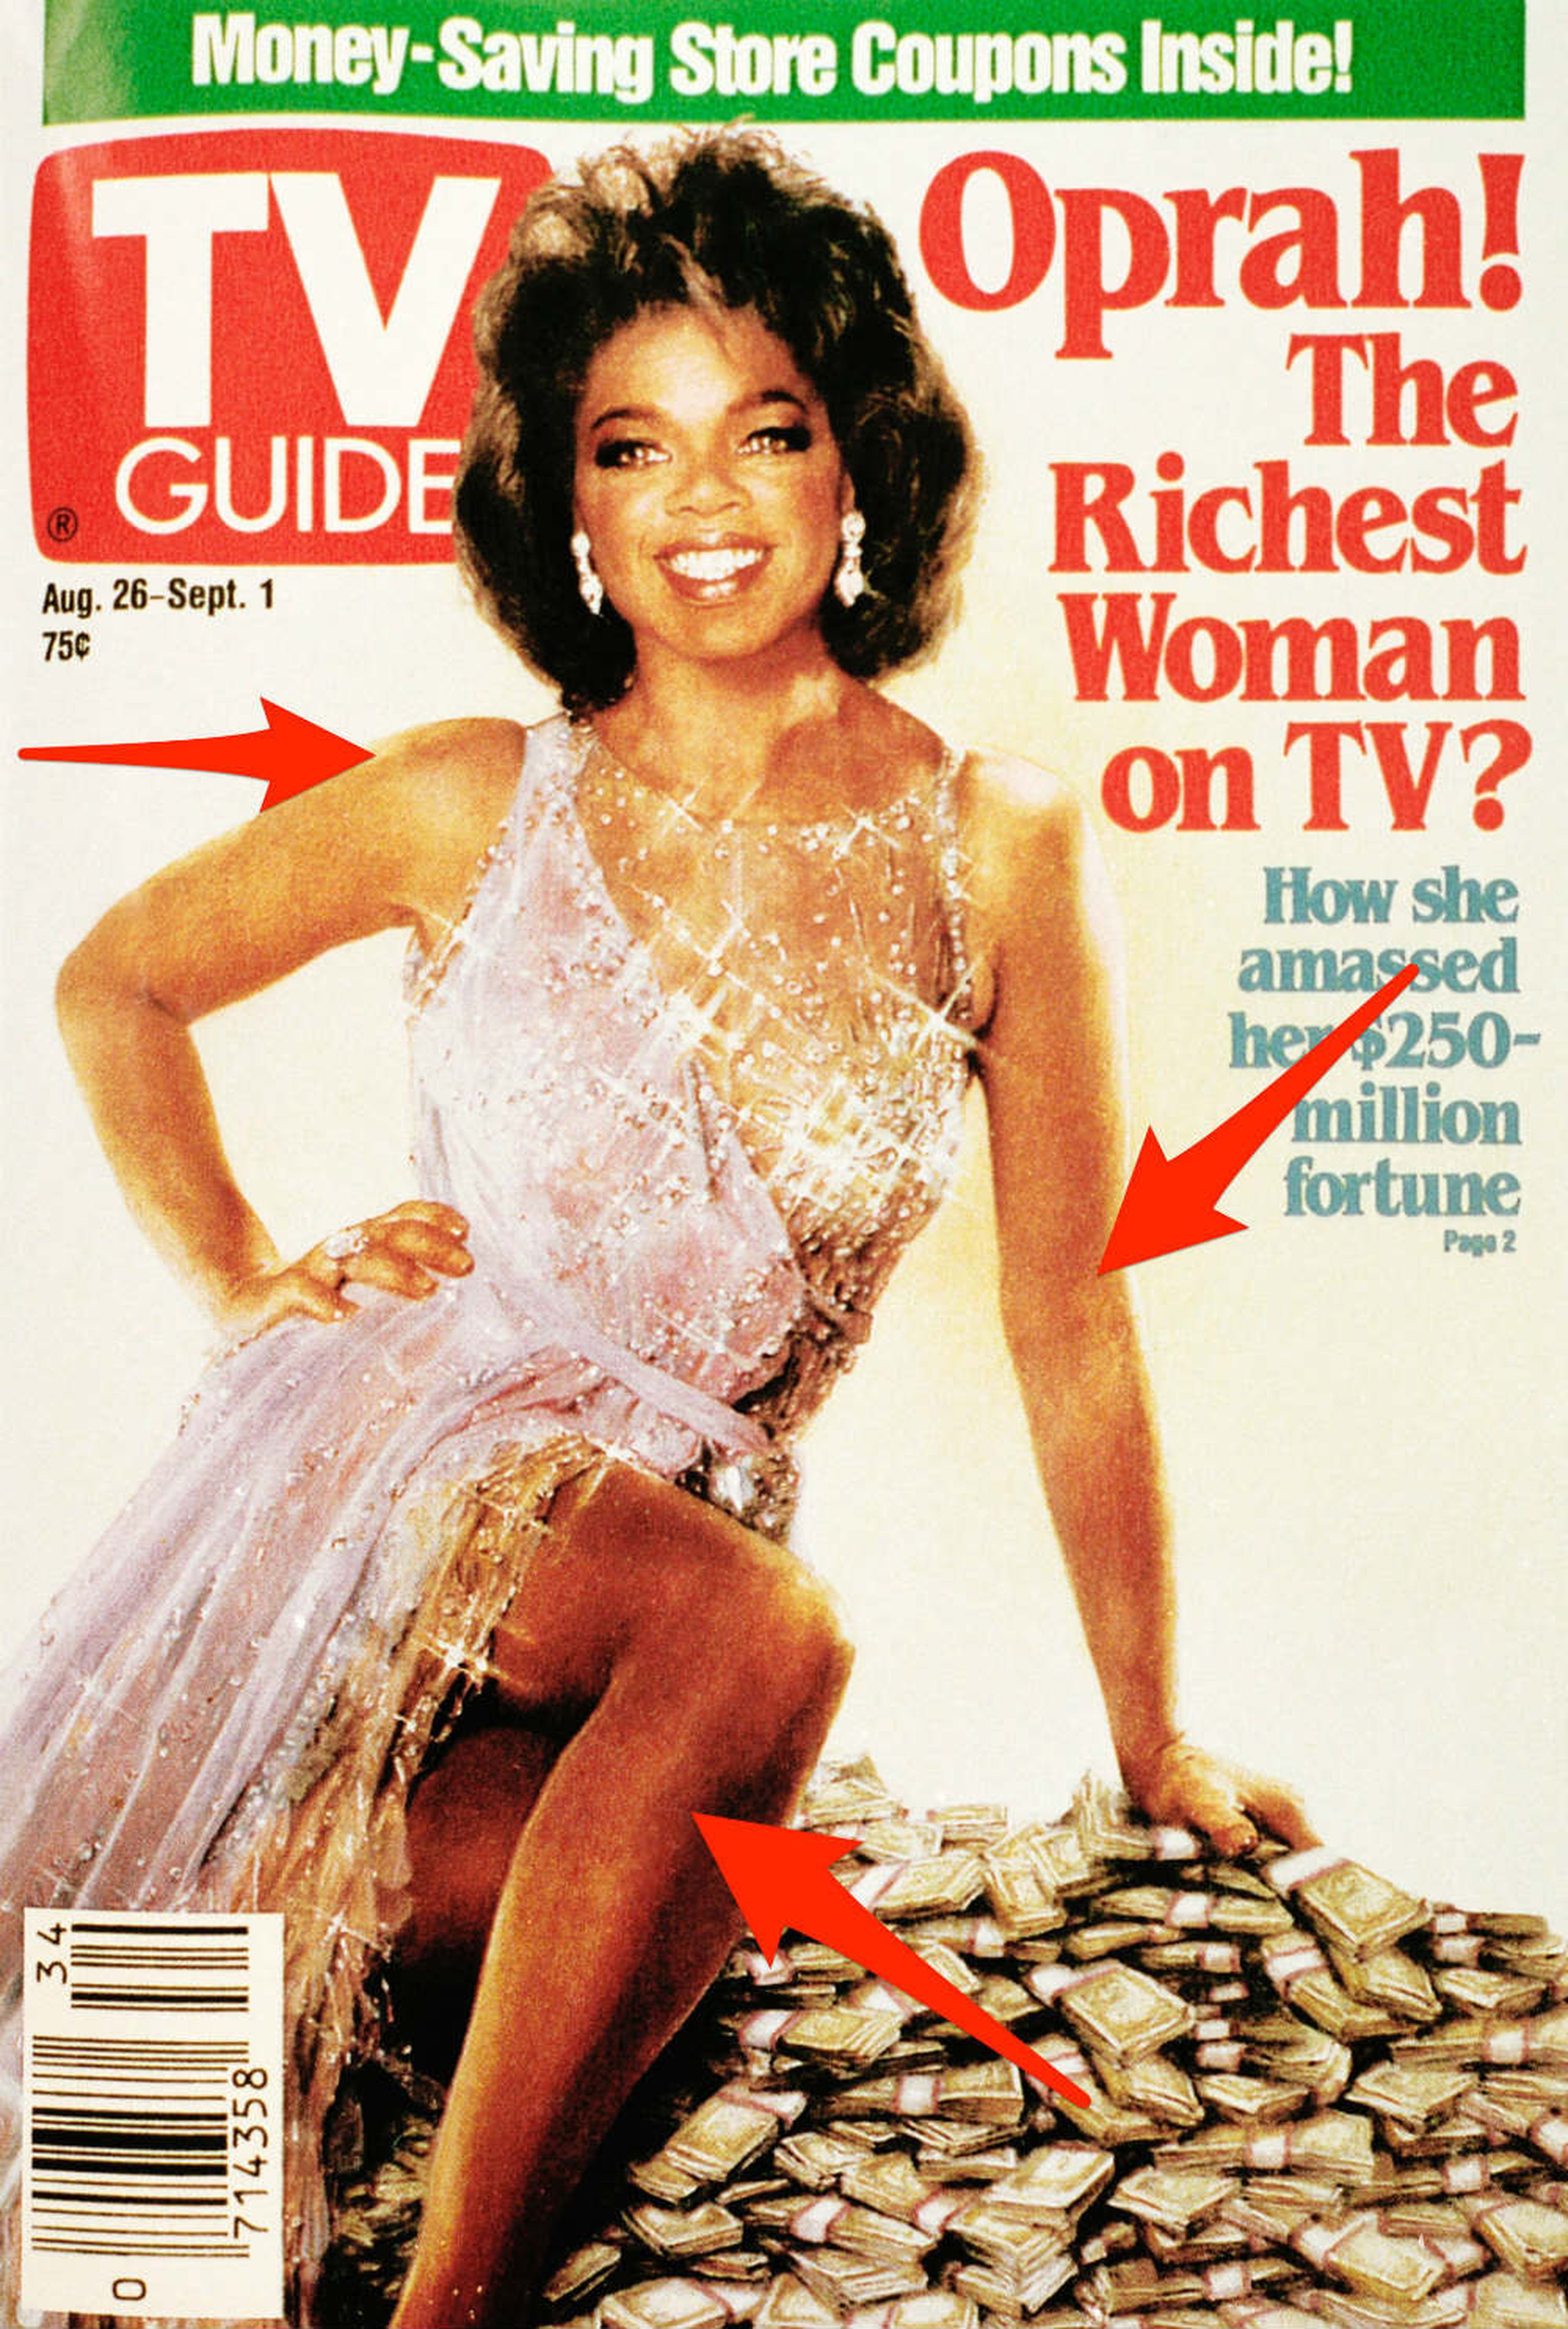 La revista editó la cabeza de Winfrey en el cuerpo de la estrella de los años 60 Ann-Margret, sin el permiso de ninguna de las estrellas.